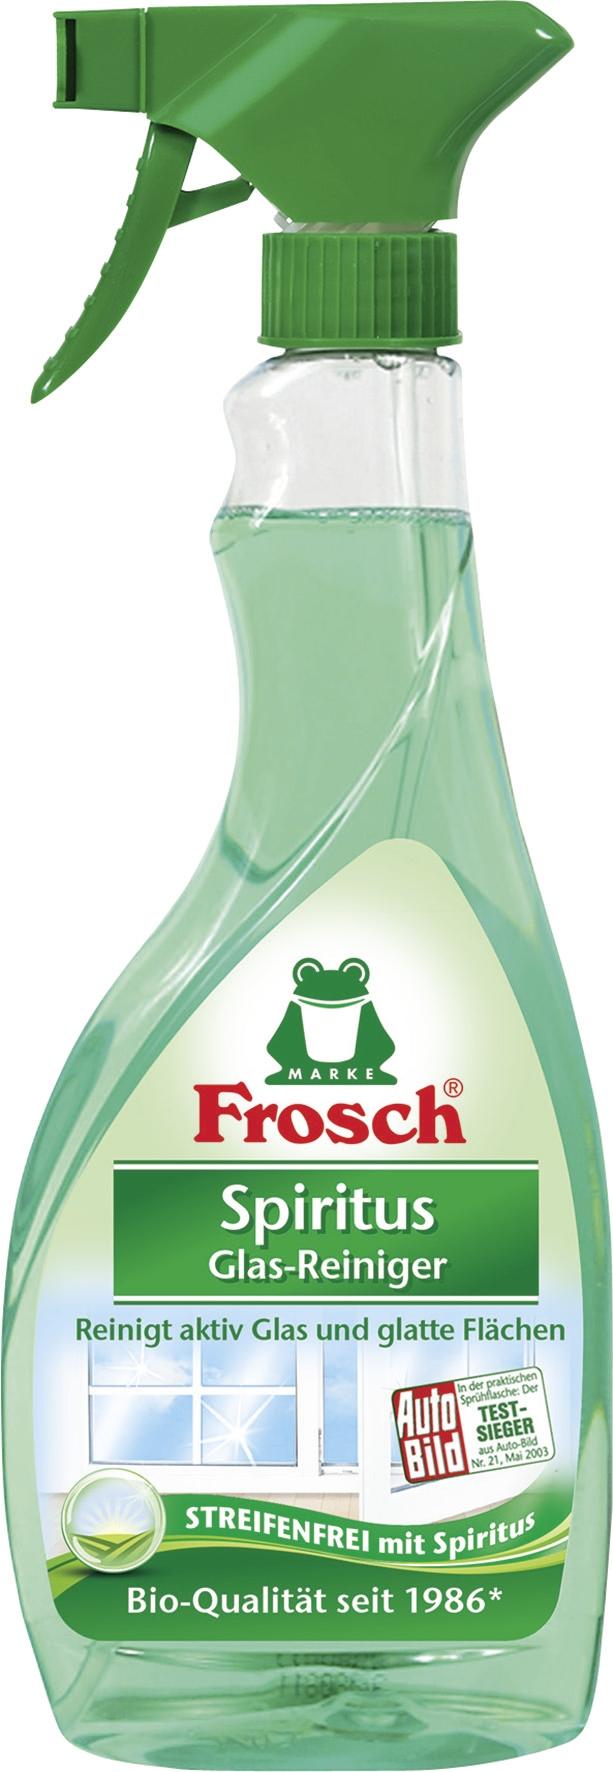 Frosch Spiritus Glas-Reiniger Sprühflasche